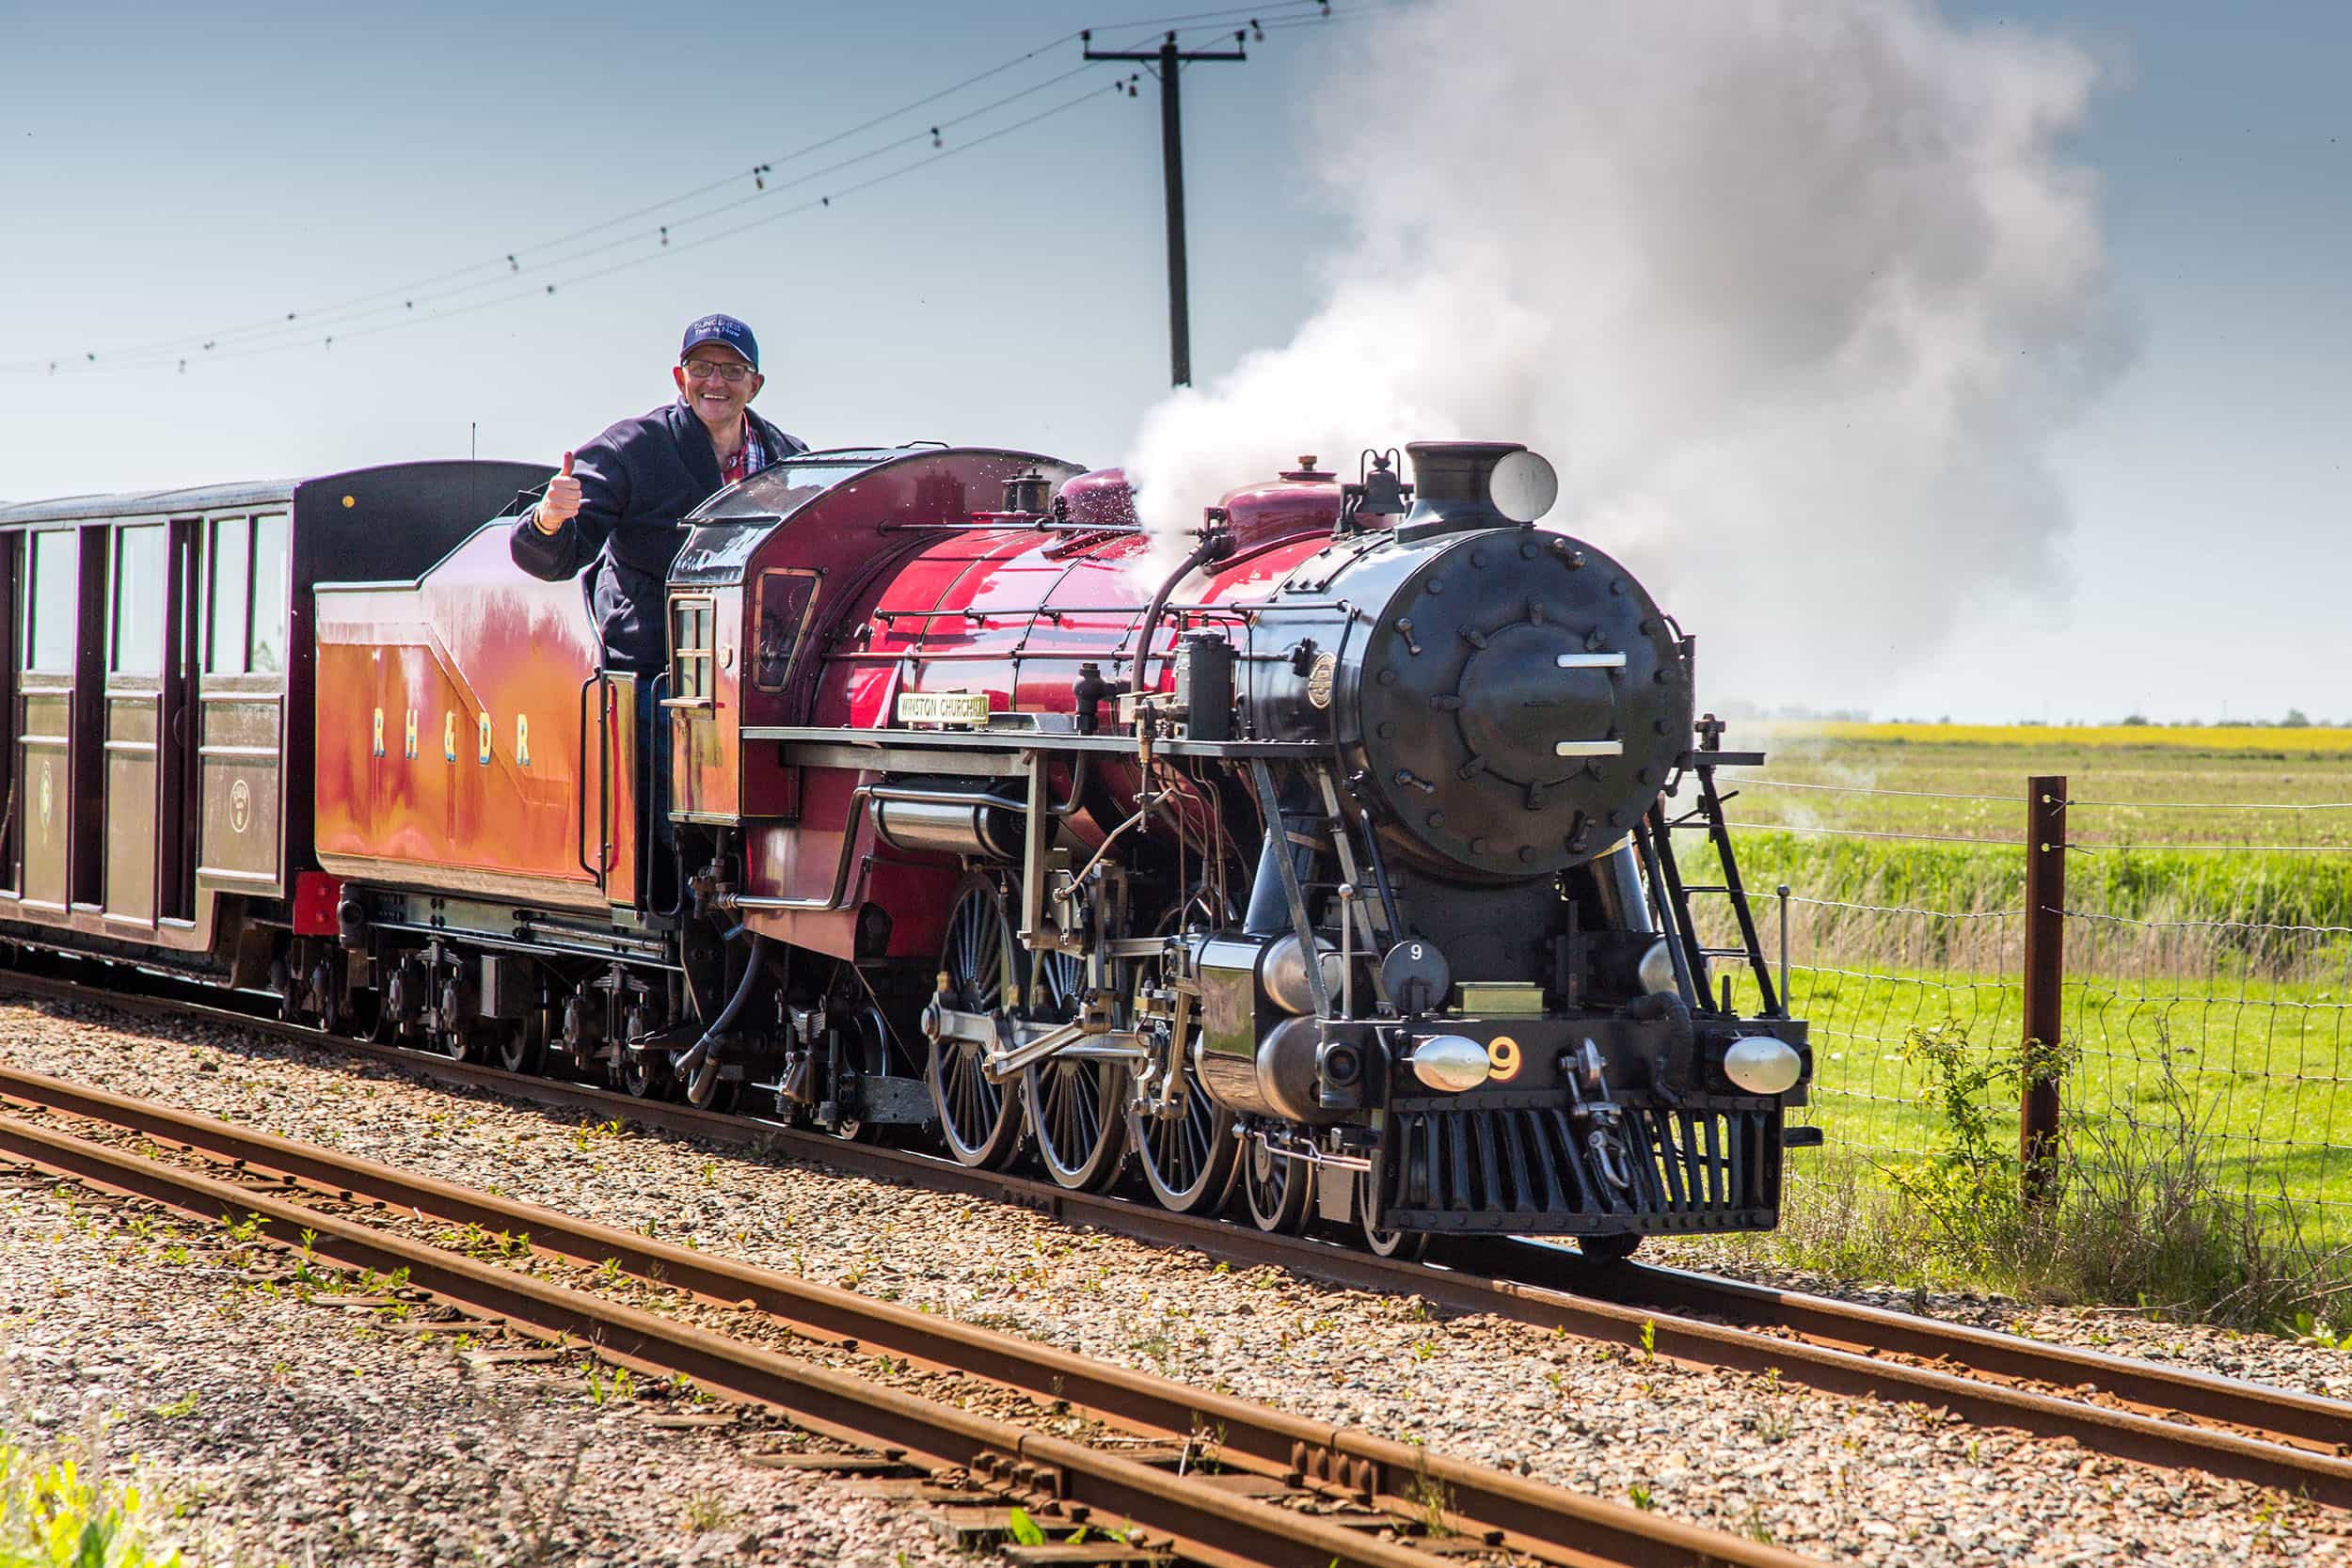 Experiences at Romney, Hythe & Dymchurch Railway